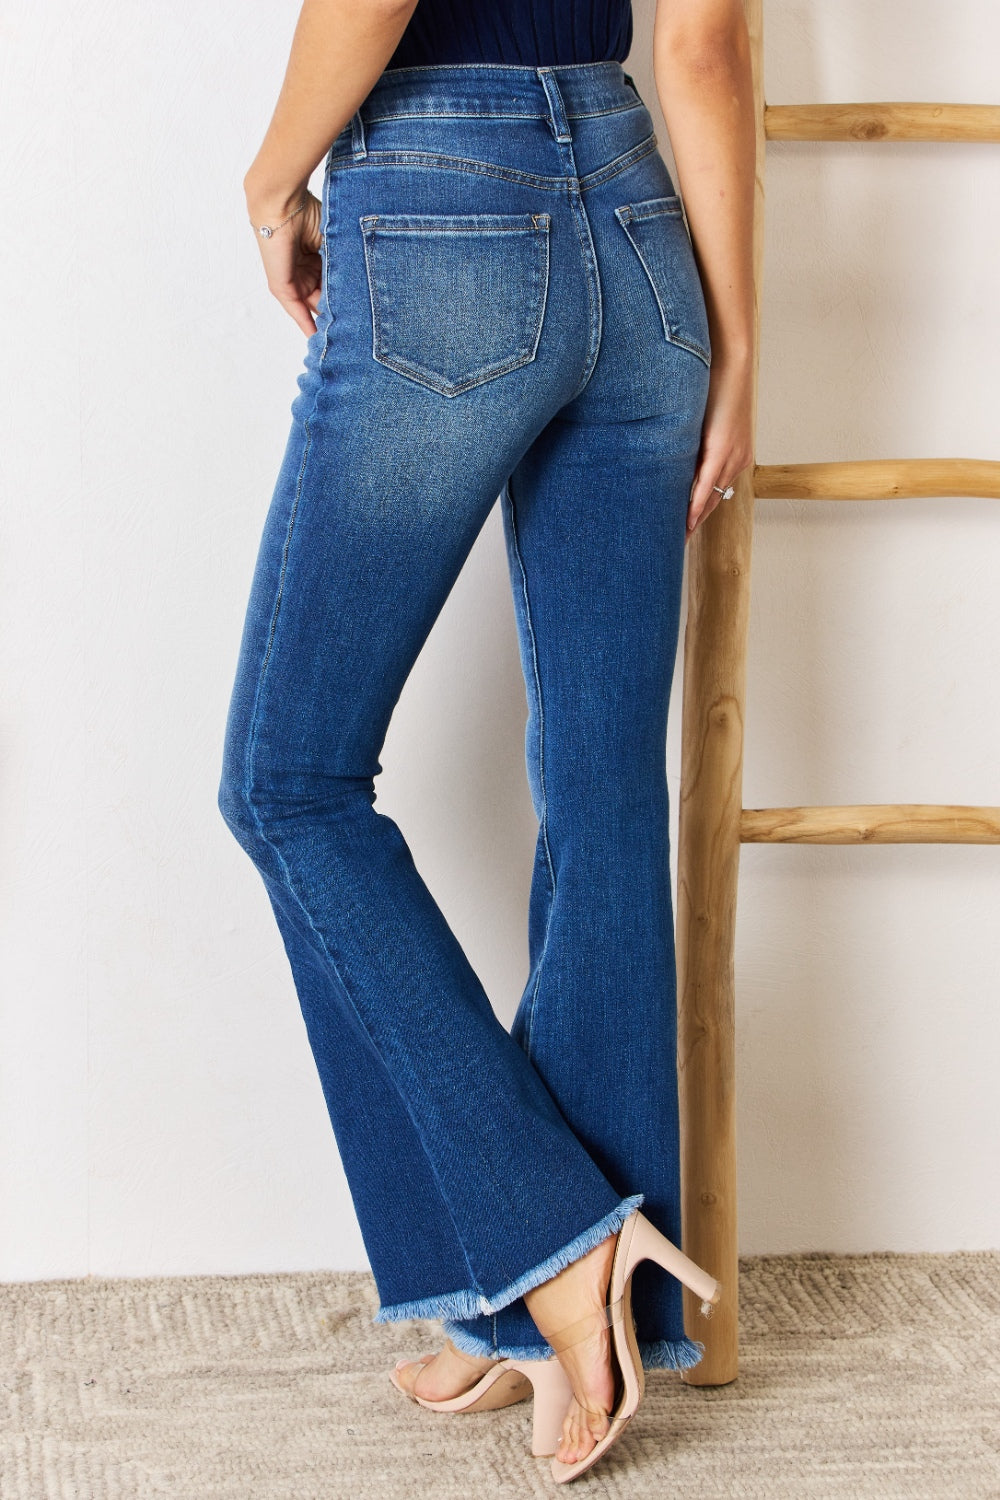 Shop Jeans | Krush Kandy Boutique | Phoenix, AZ